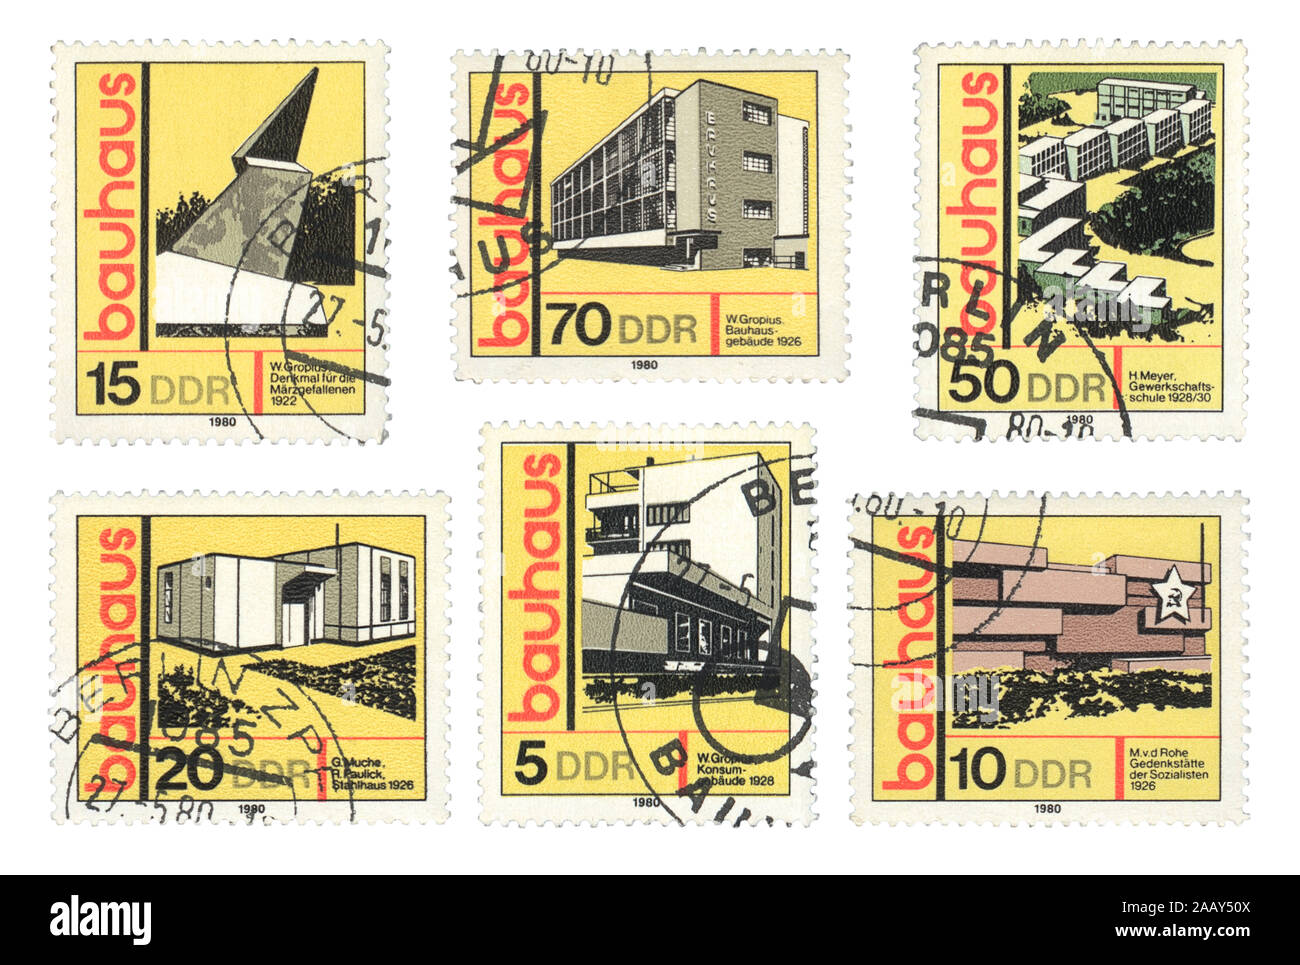 Staatliches Bauhaus 1919 . Les timbres imprimés en bâtiments Bauhaus montre DDR, école de Bauhaus, 1980 Banque D'Images